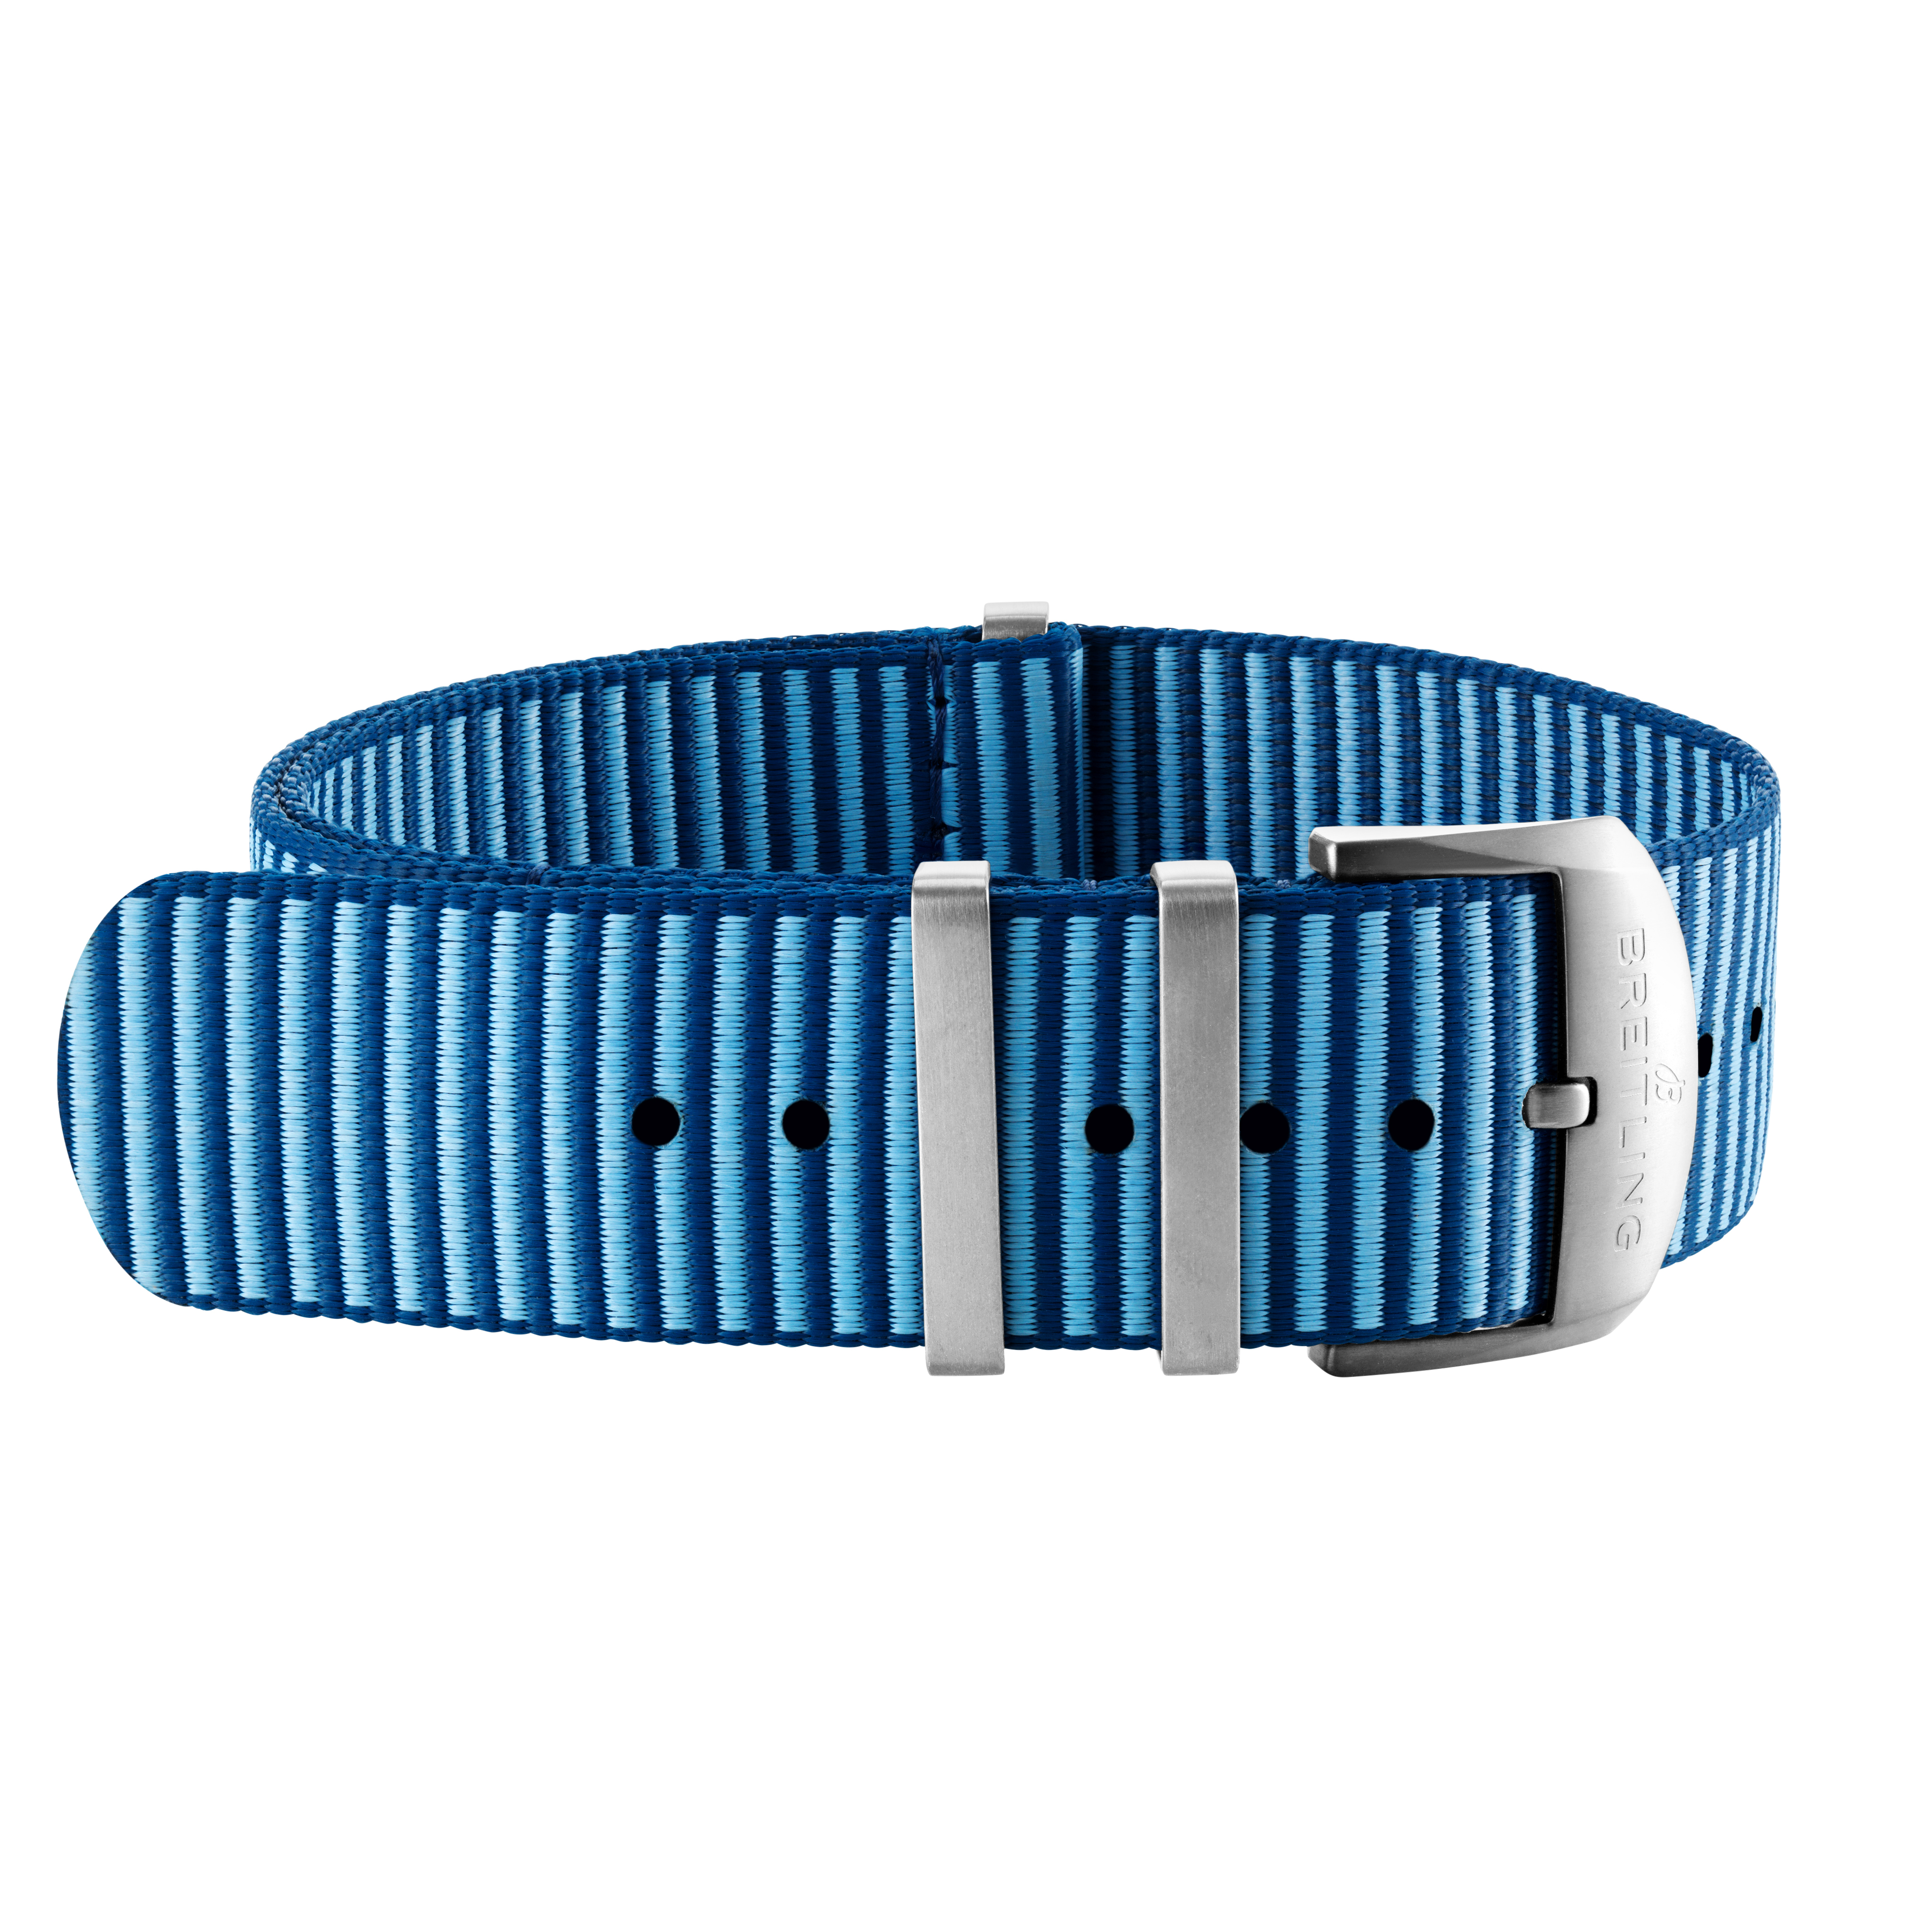 라이트 블루 아우터노운 에코닐® 패브릭 싱글 피스 스트랩(스틸 키퍼) - 18 mm